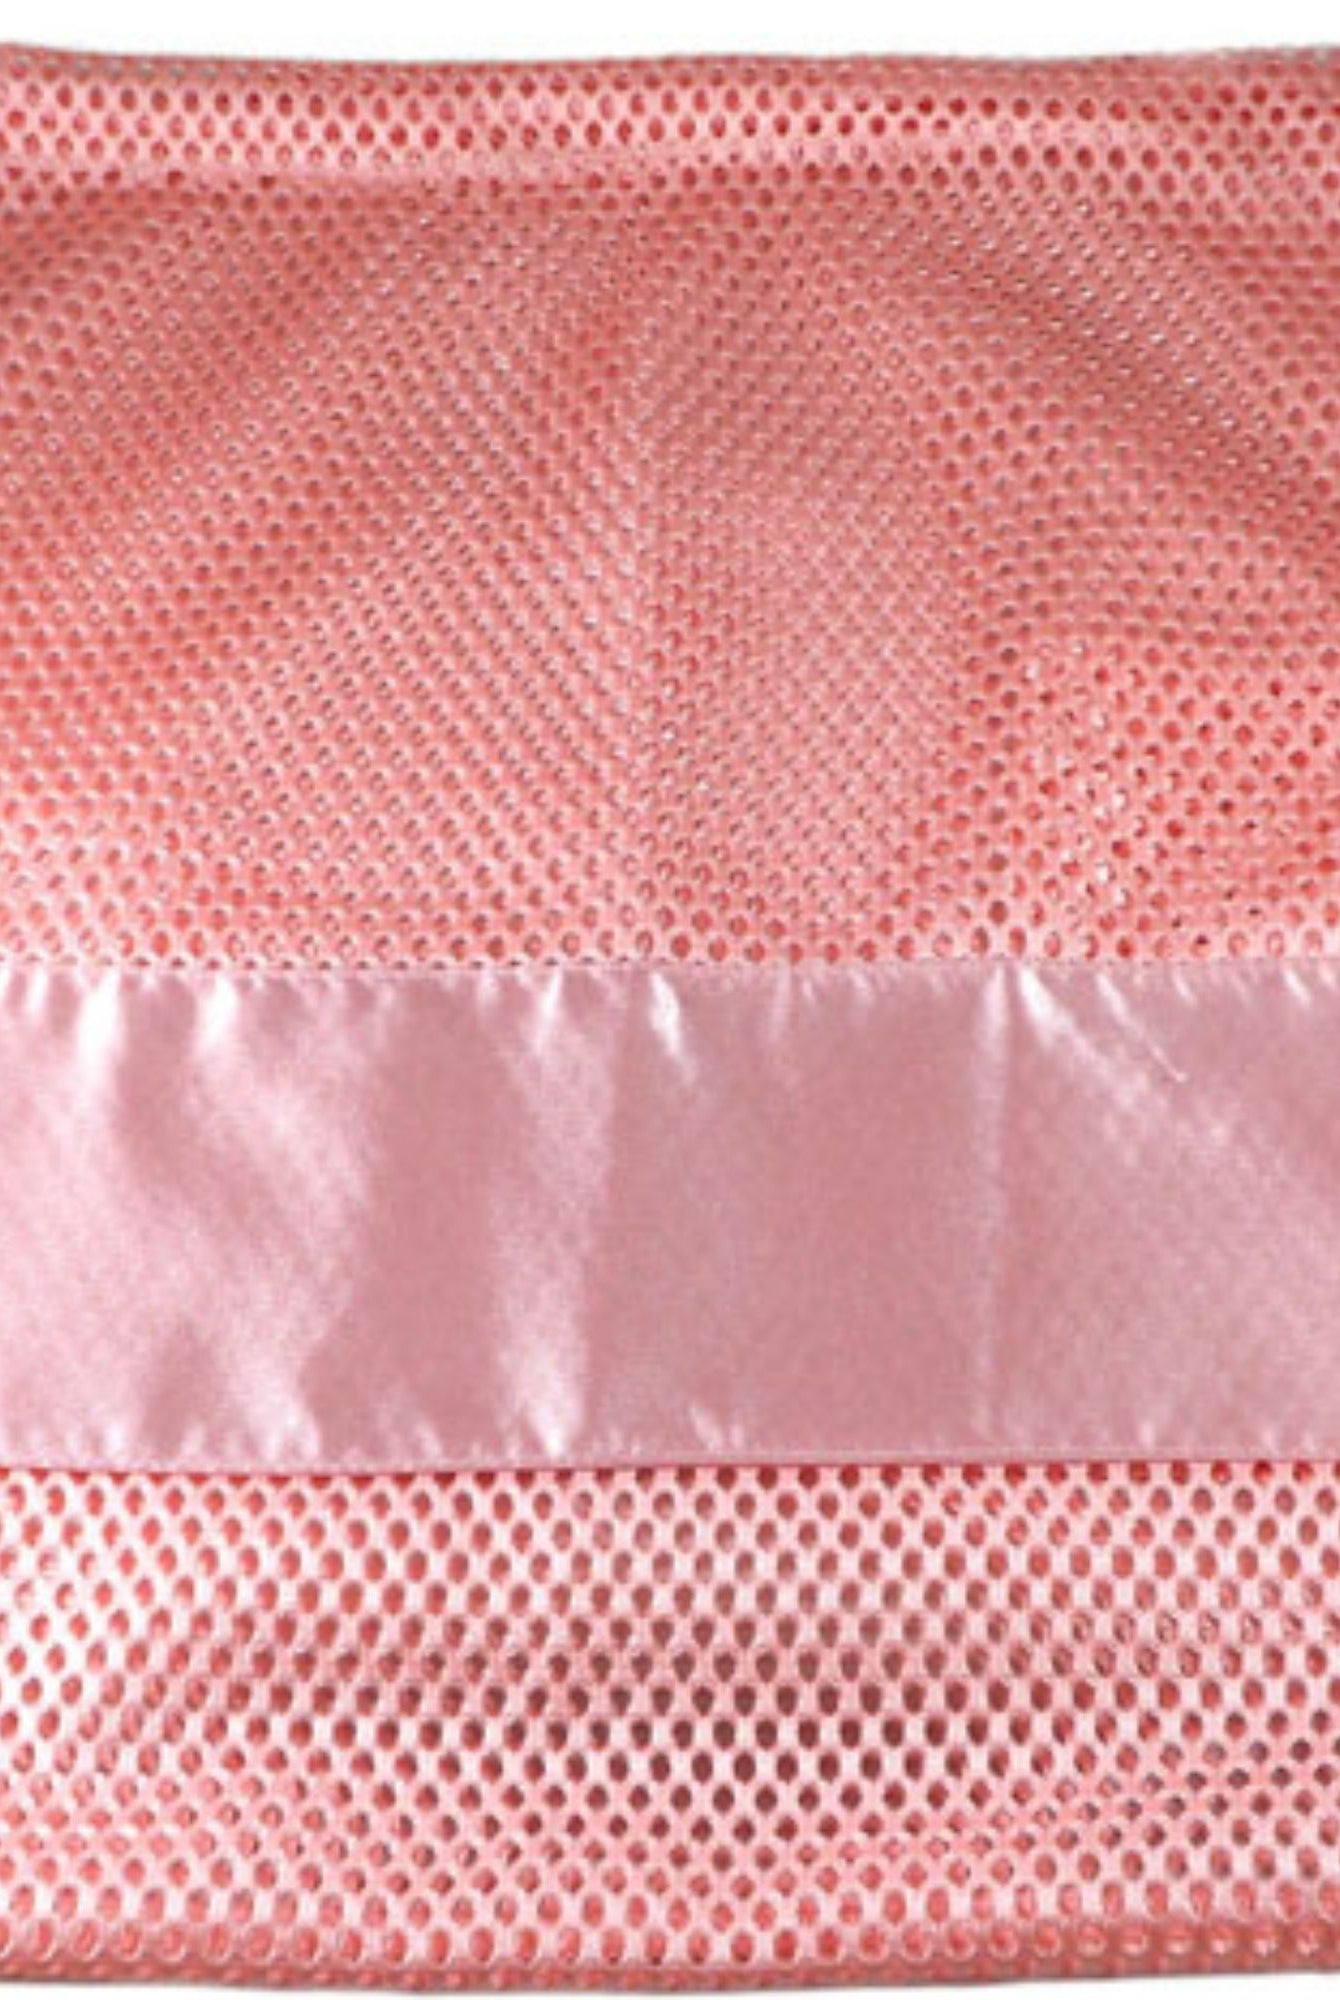 Large Nylon Mesh drawstring Pointe Bag Pillowcase Ballet Pink